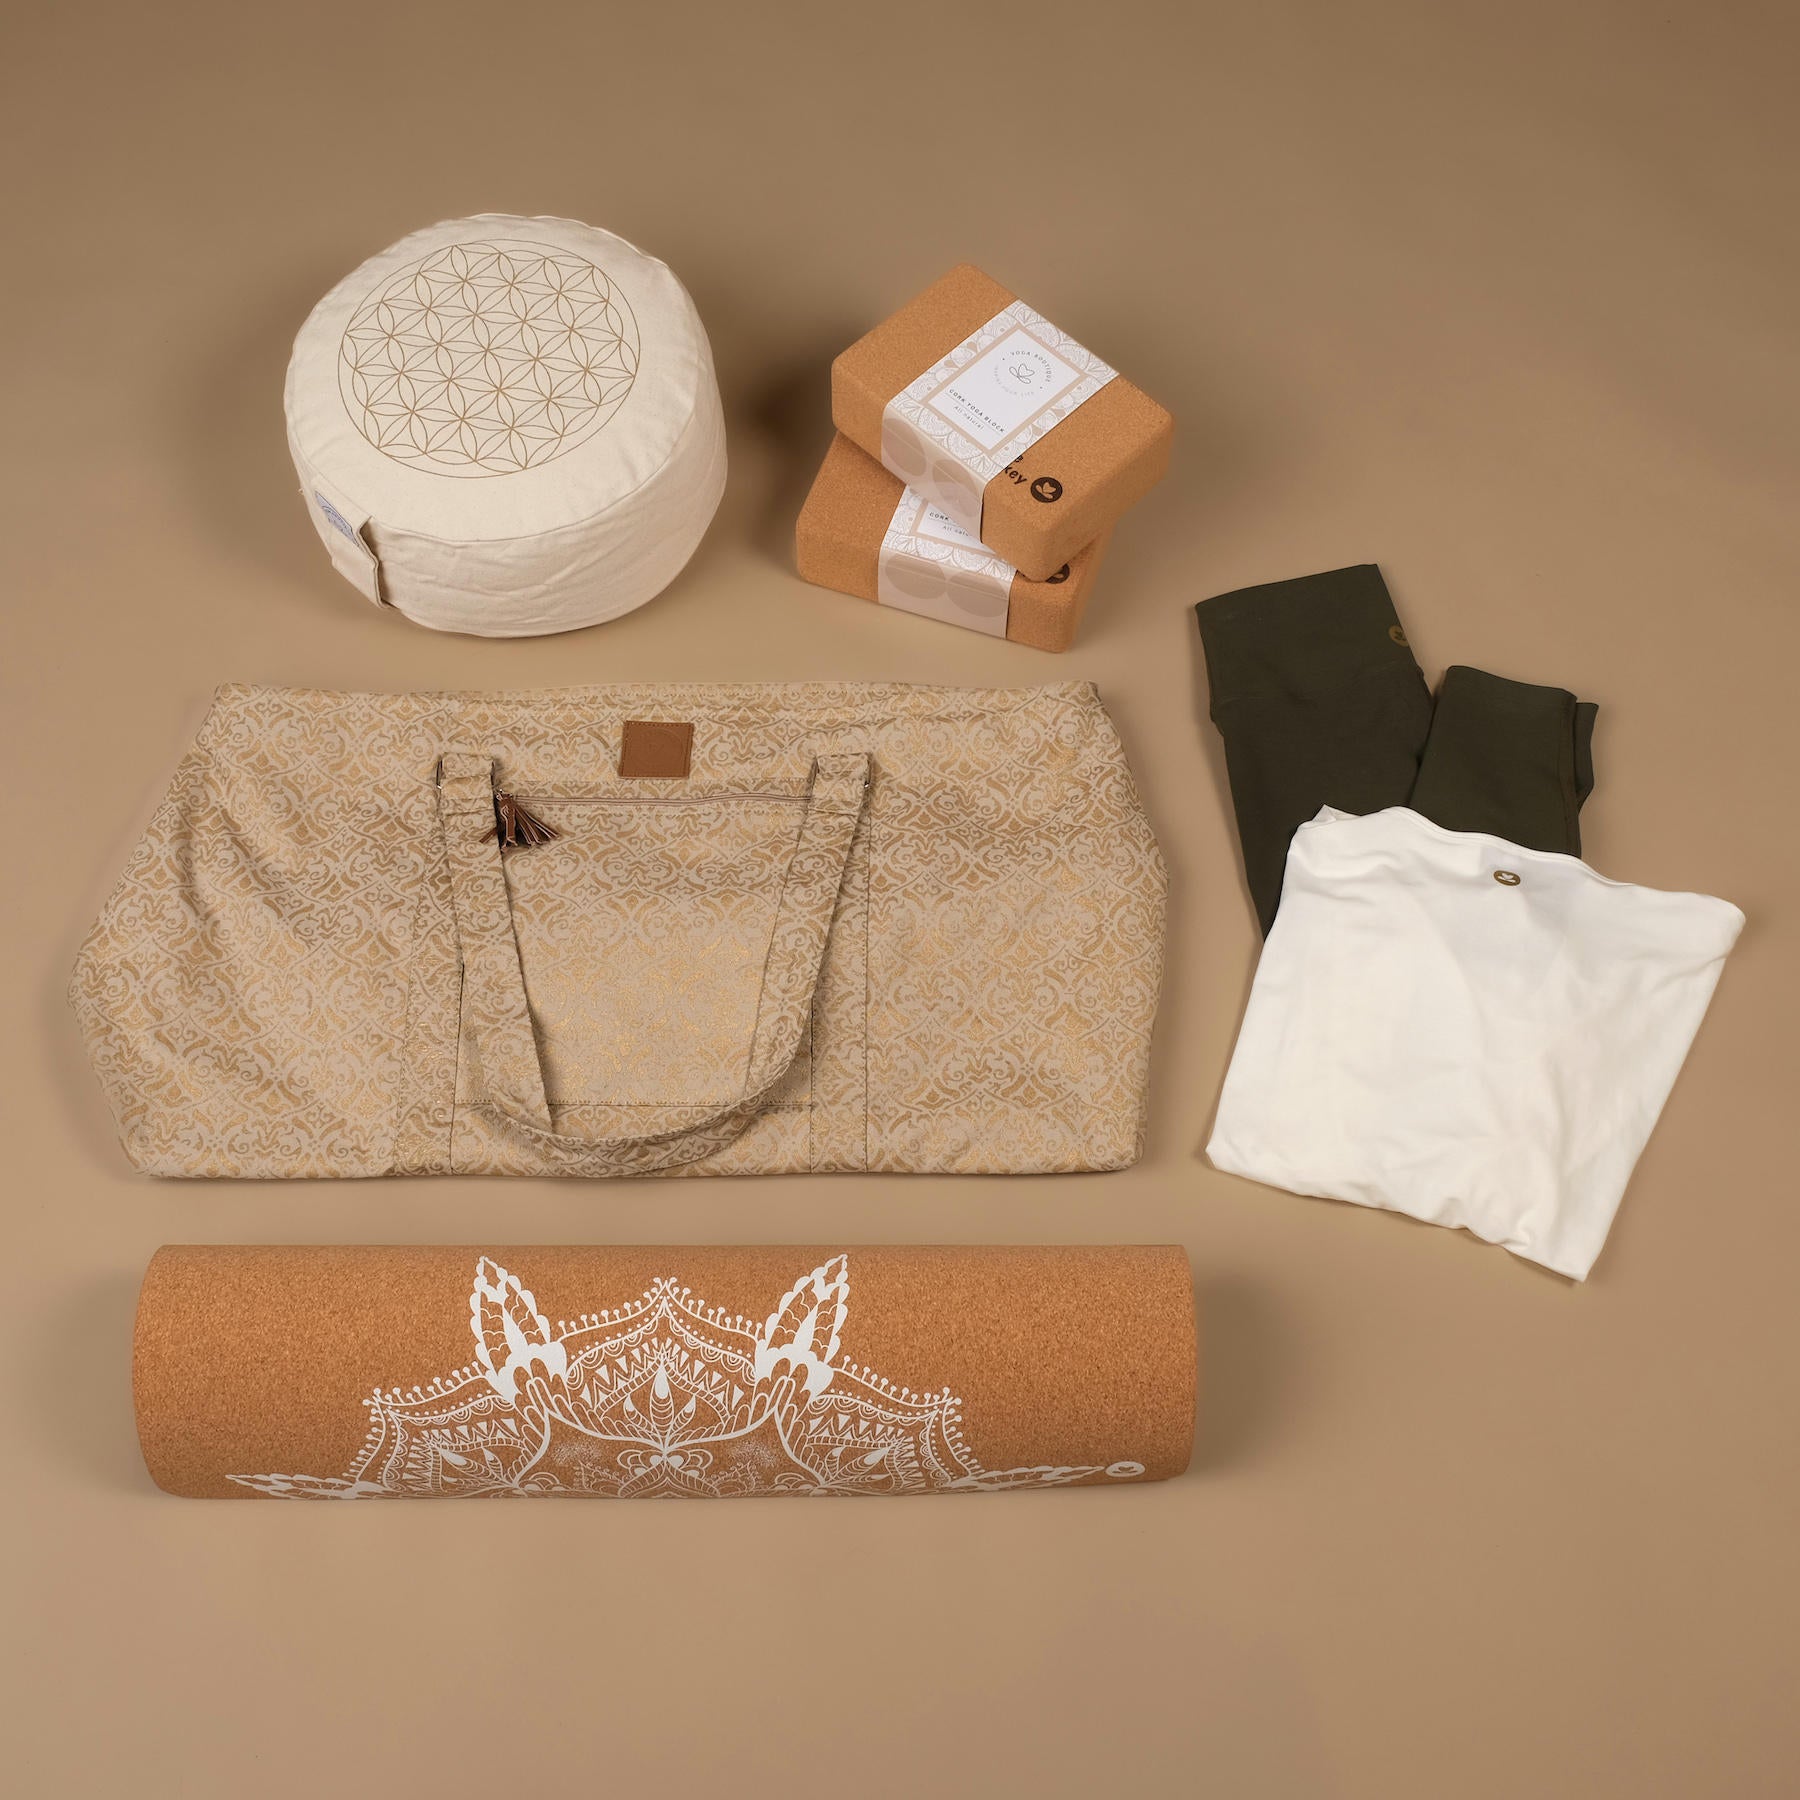 Yoga Bag Large - Borsa da viaggio in cotone con stampa a blocchi di sabbia